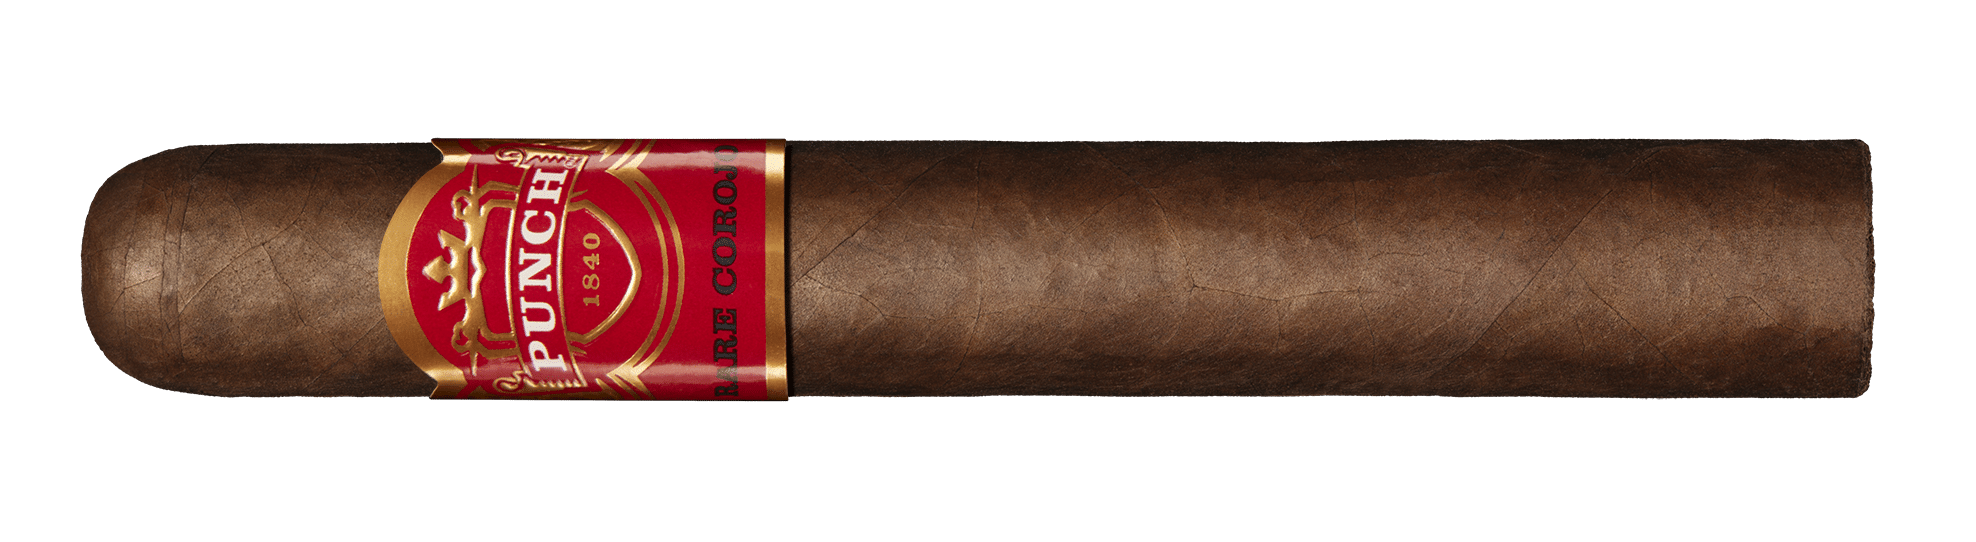 Punch Rare Corojo Seasonal Release Hits Shelves - Cigar News